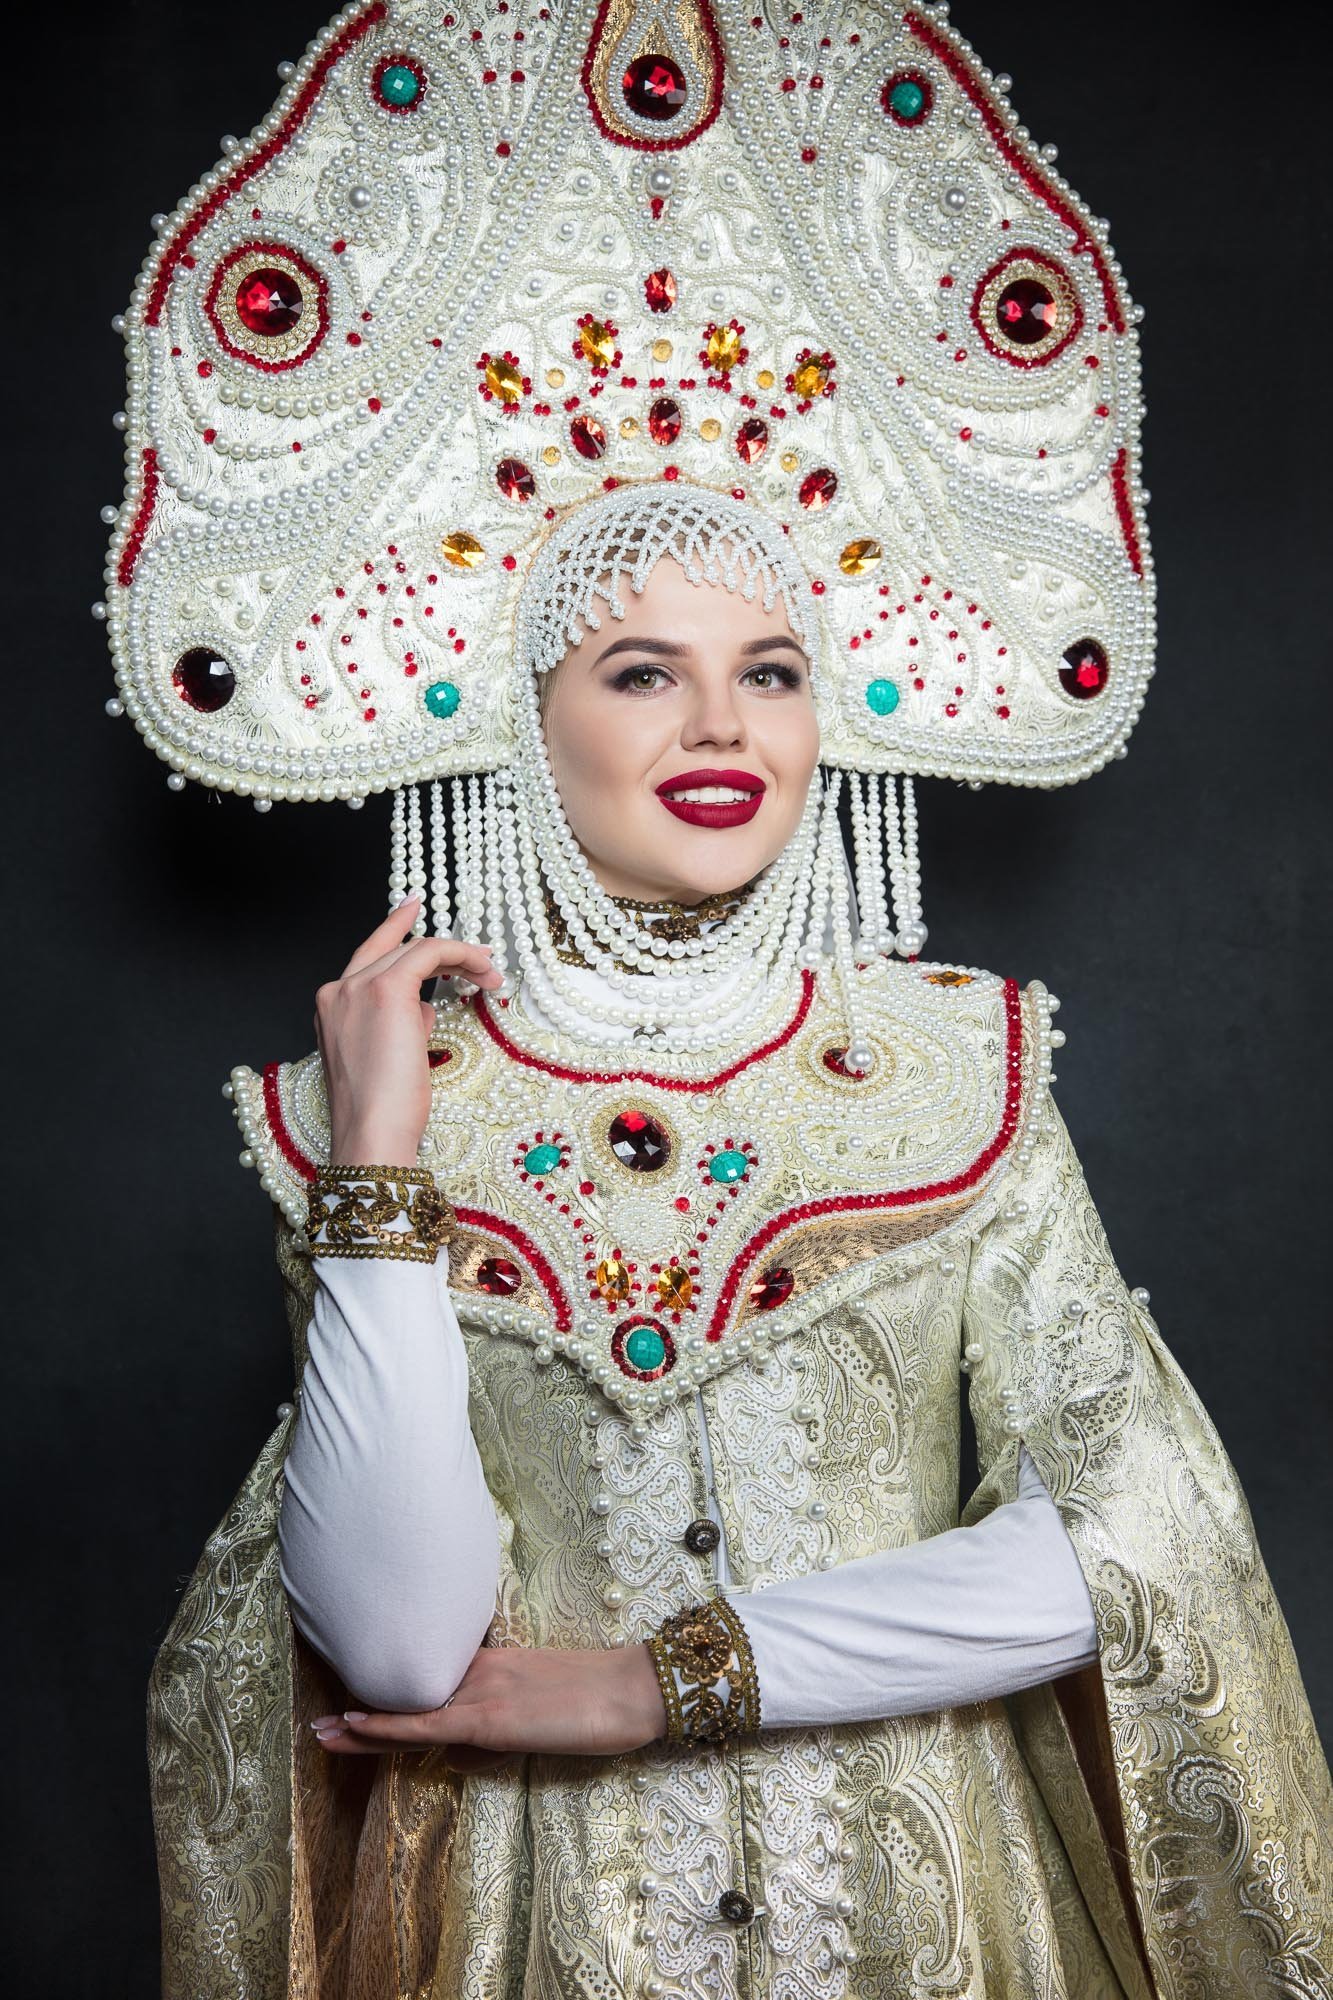 Русский стилизованный костюм женский